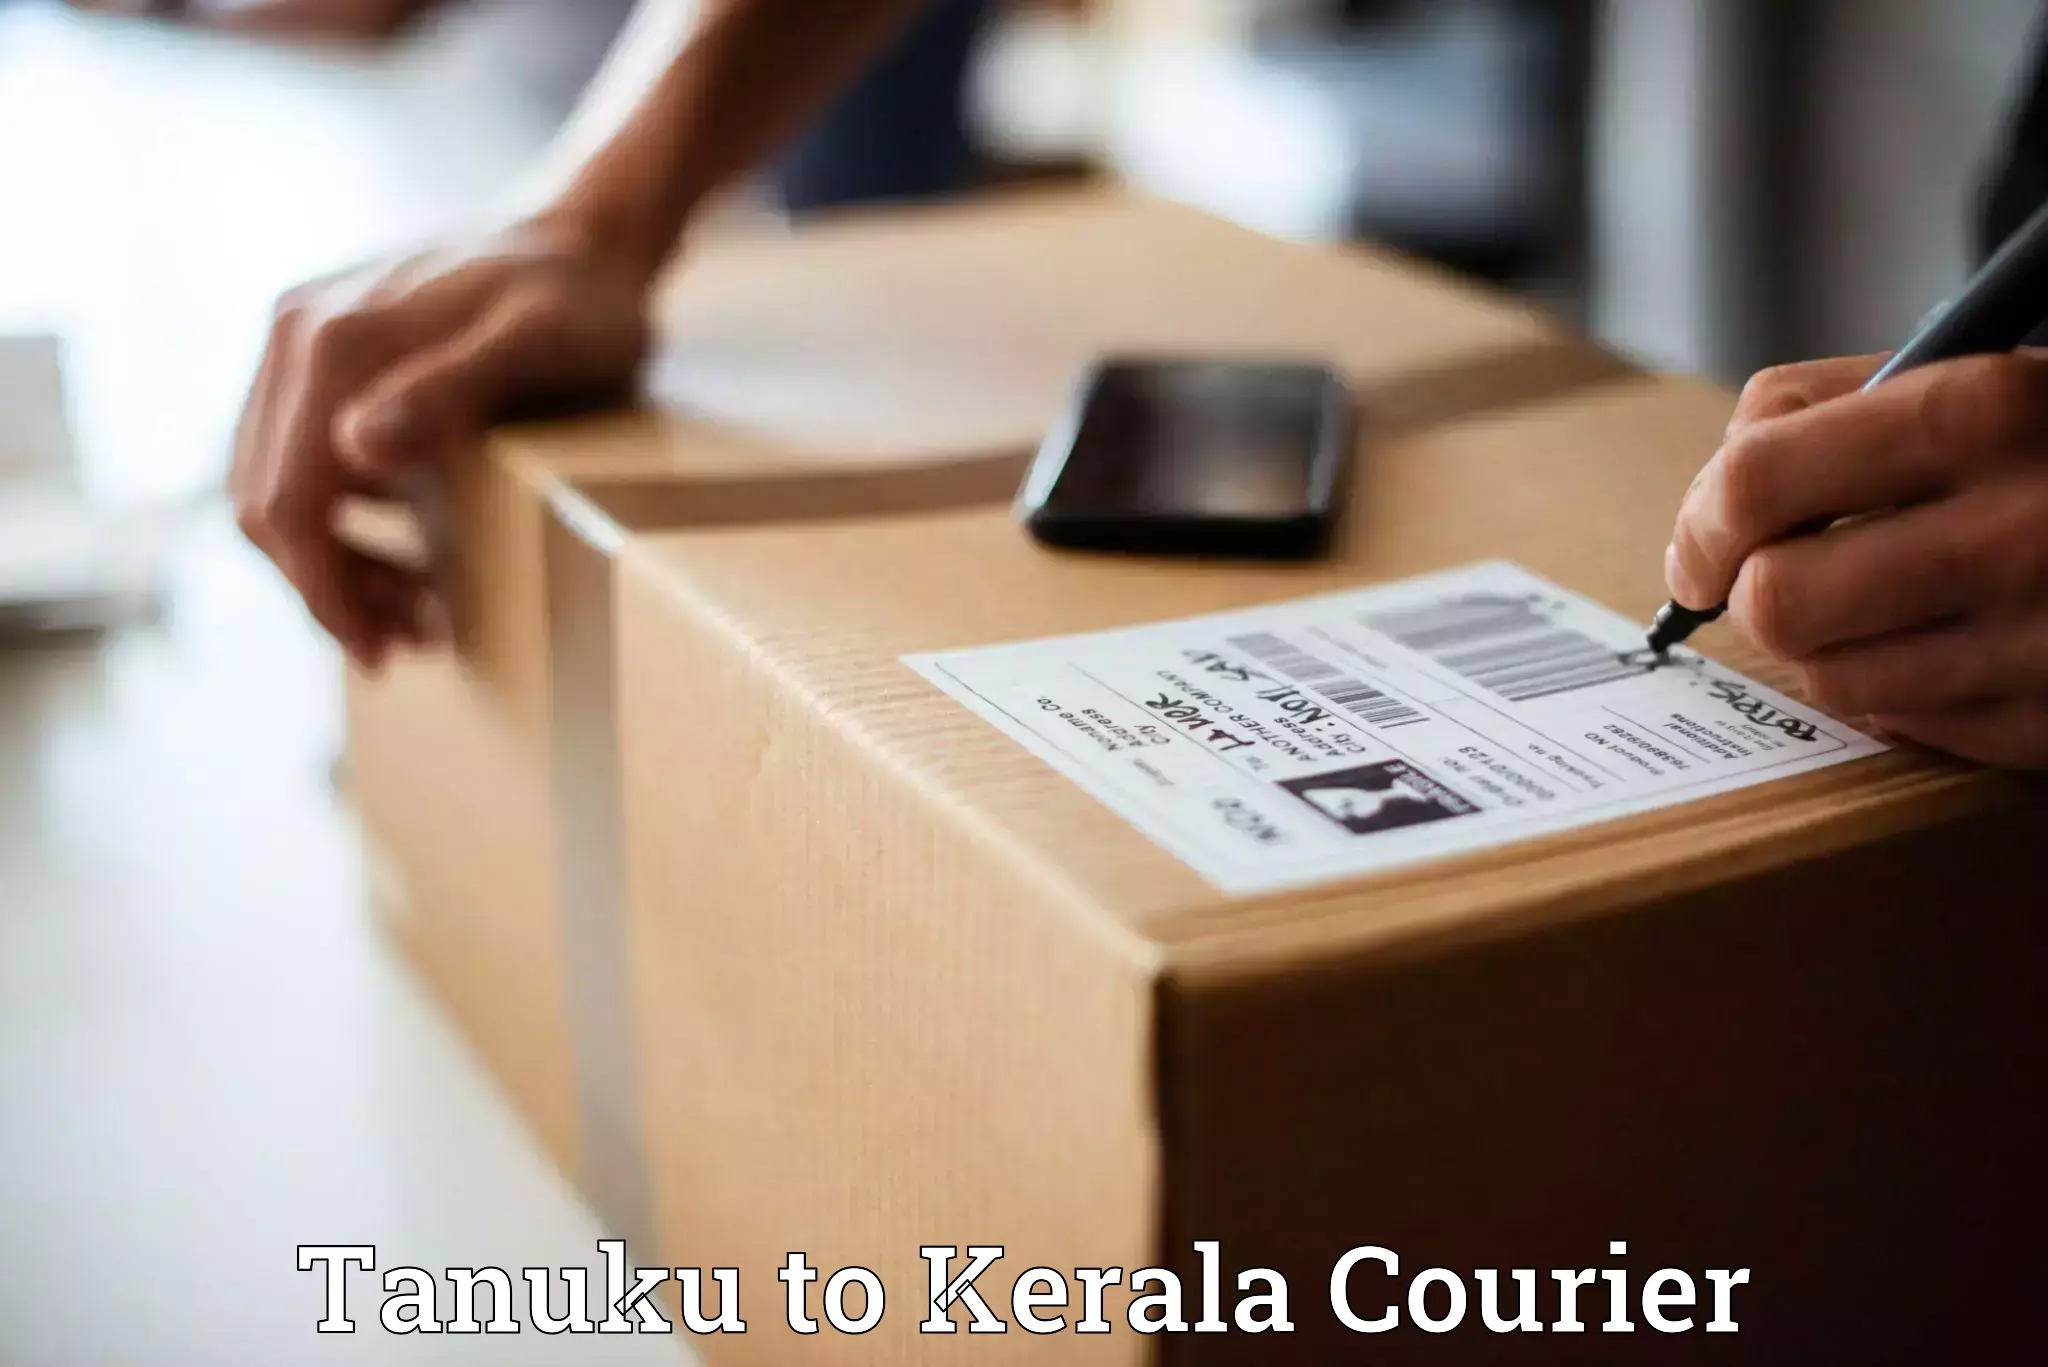 Efficient shipping operations Tanuku to Kerala